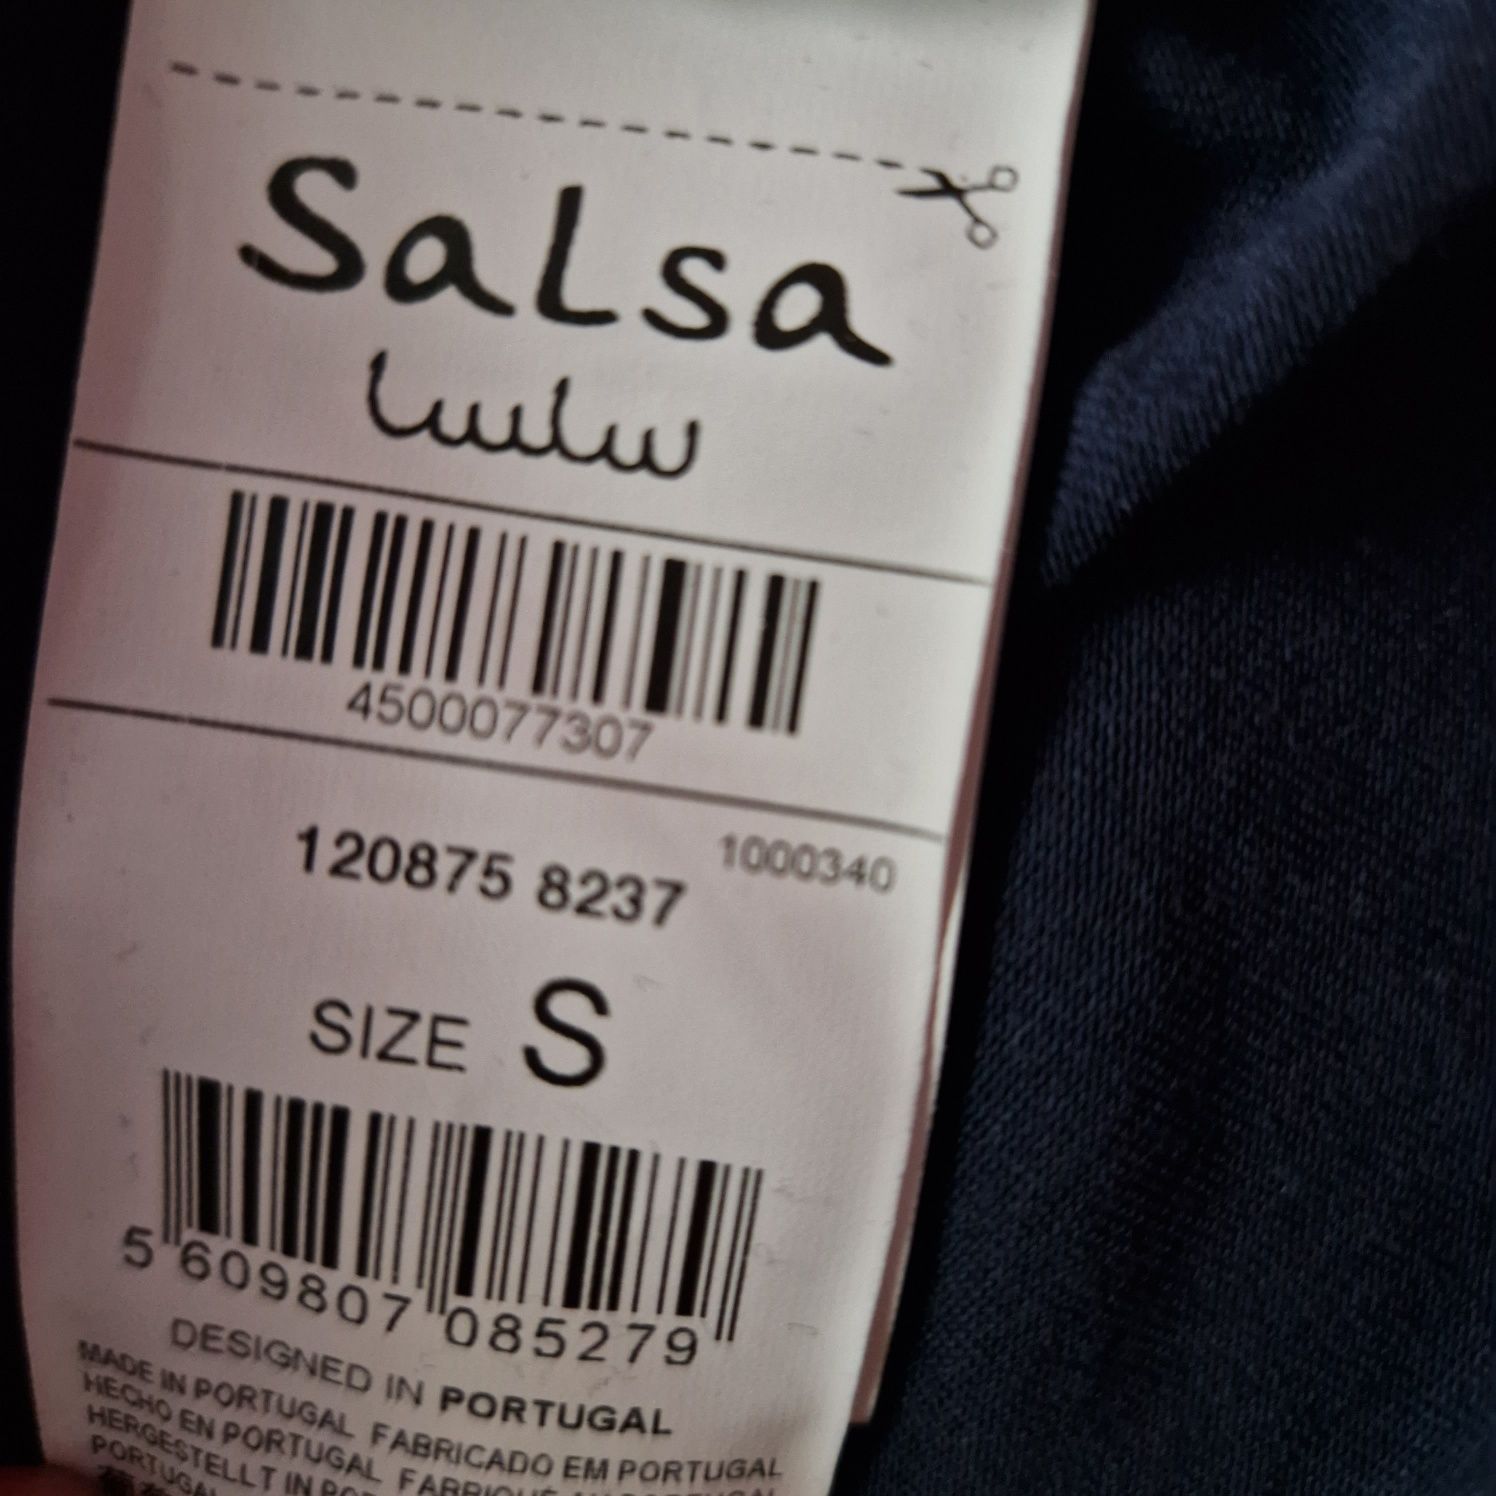 Camisola azul com logo Salsa